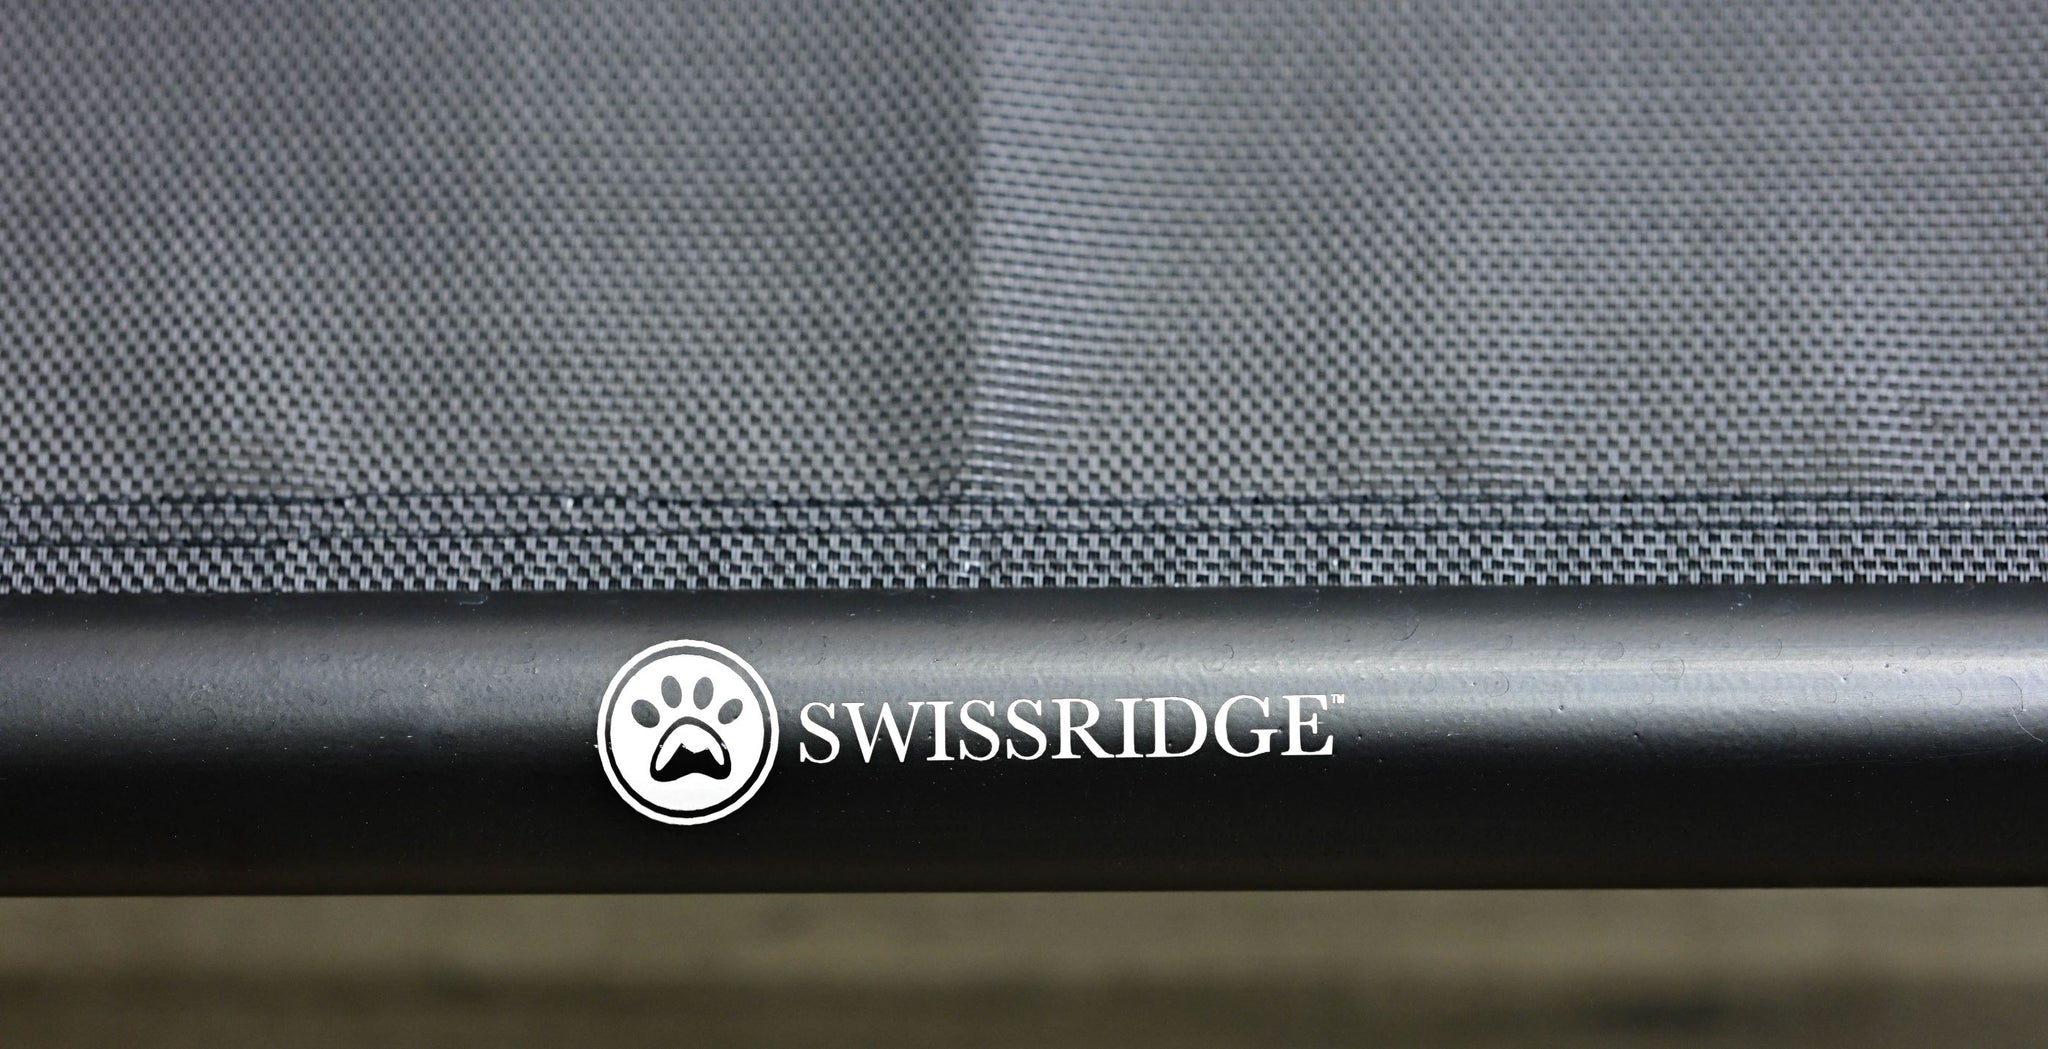 Swissridge Canine Placemat – Swissridge Canine Essentials